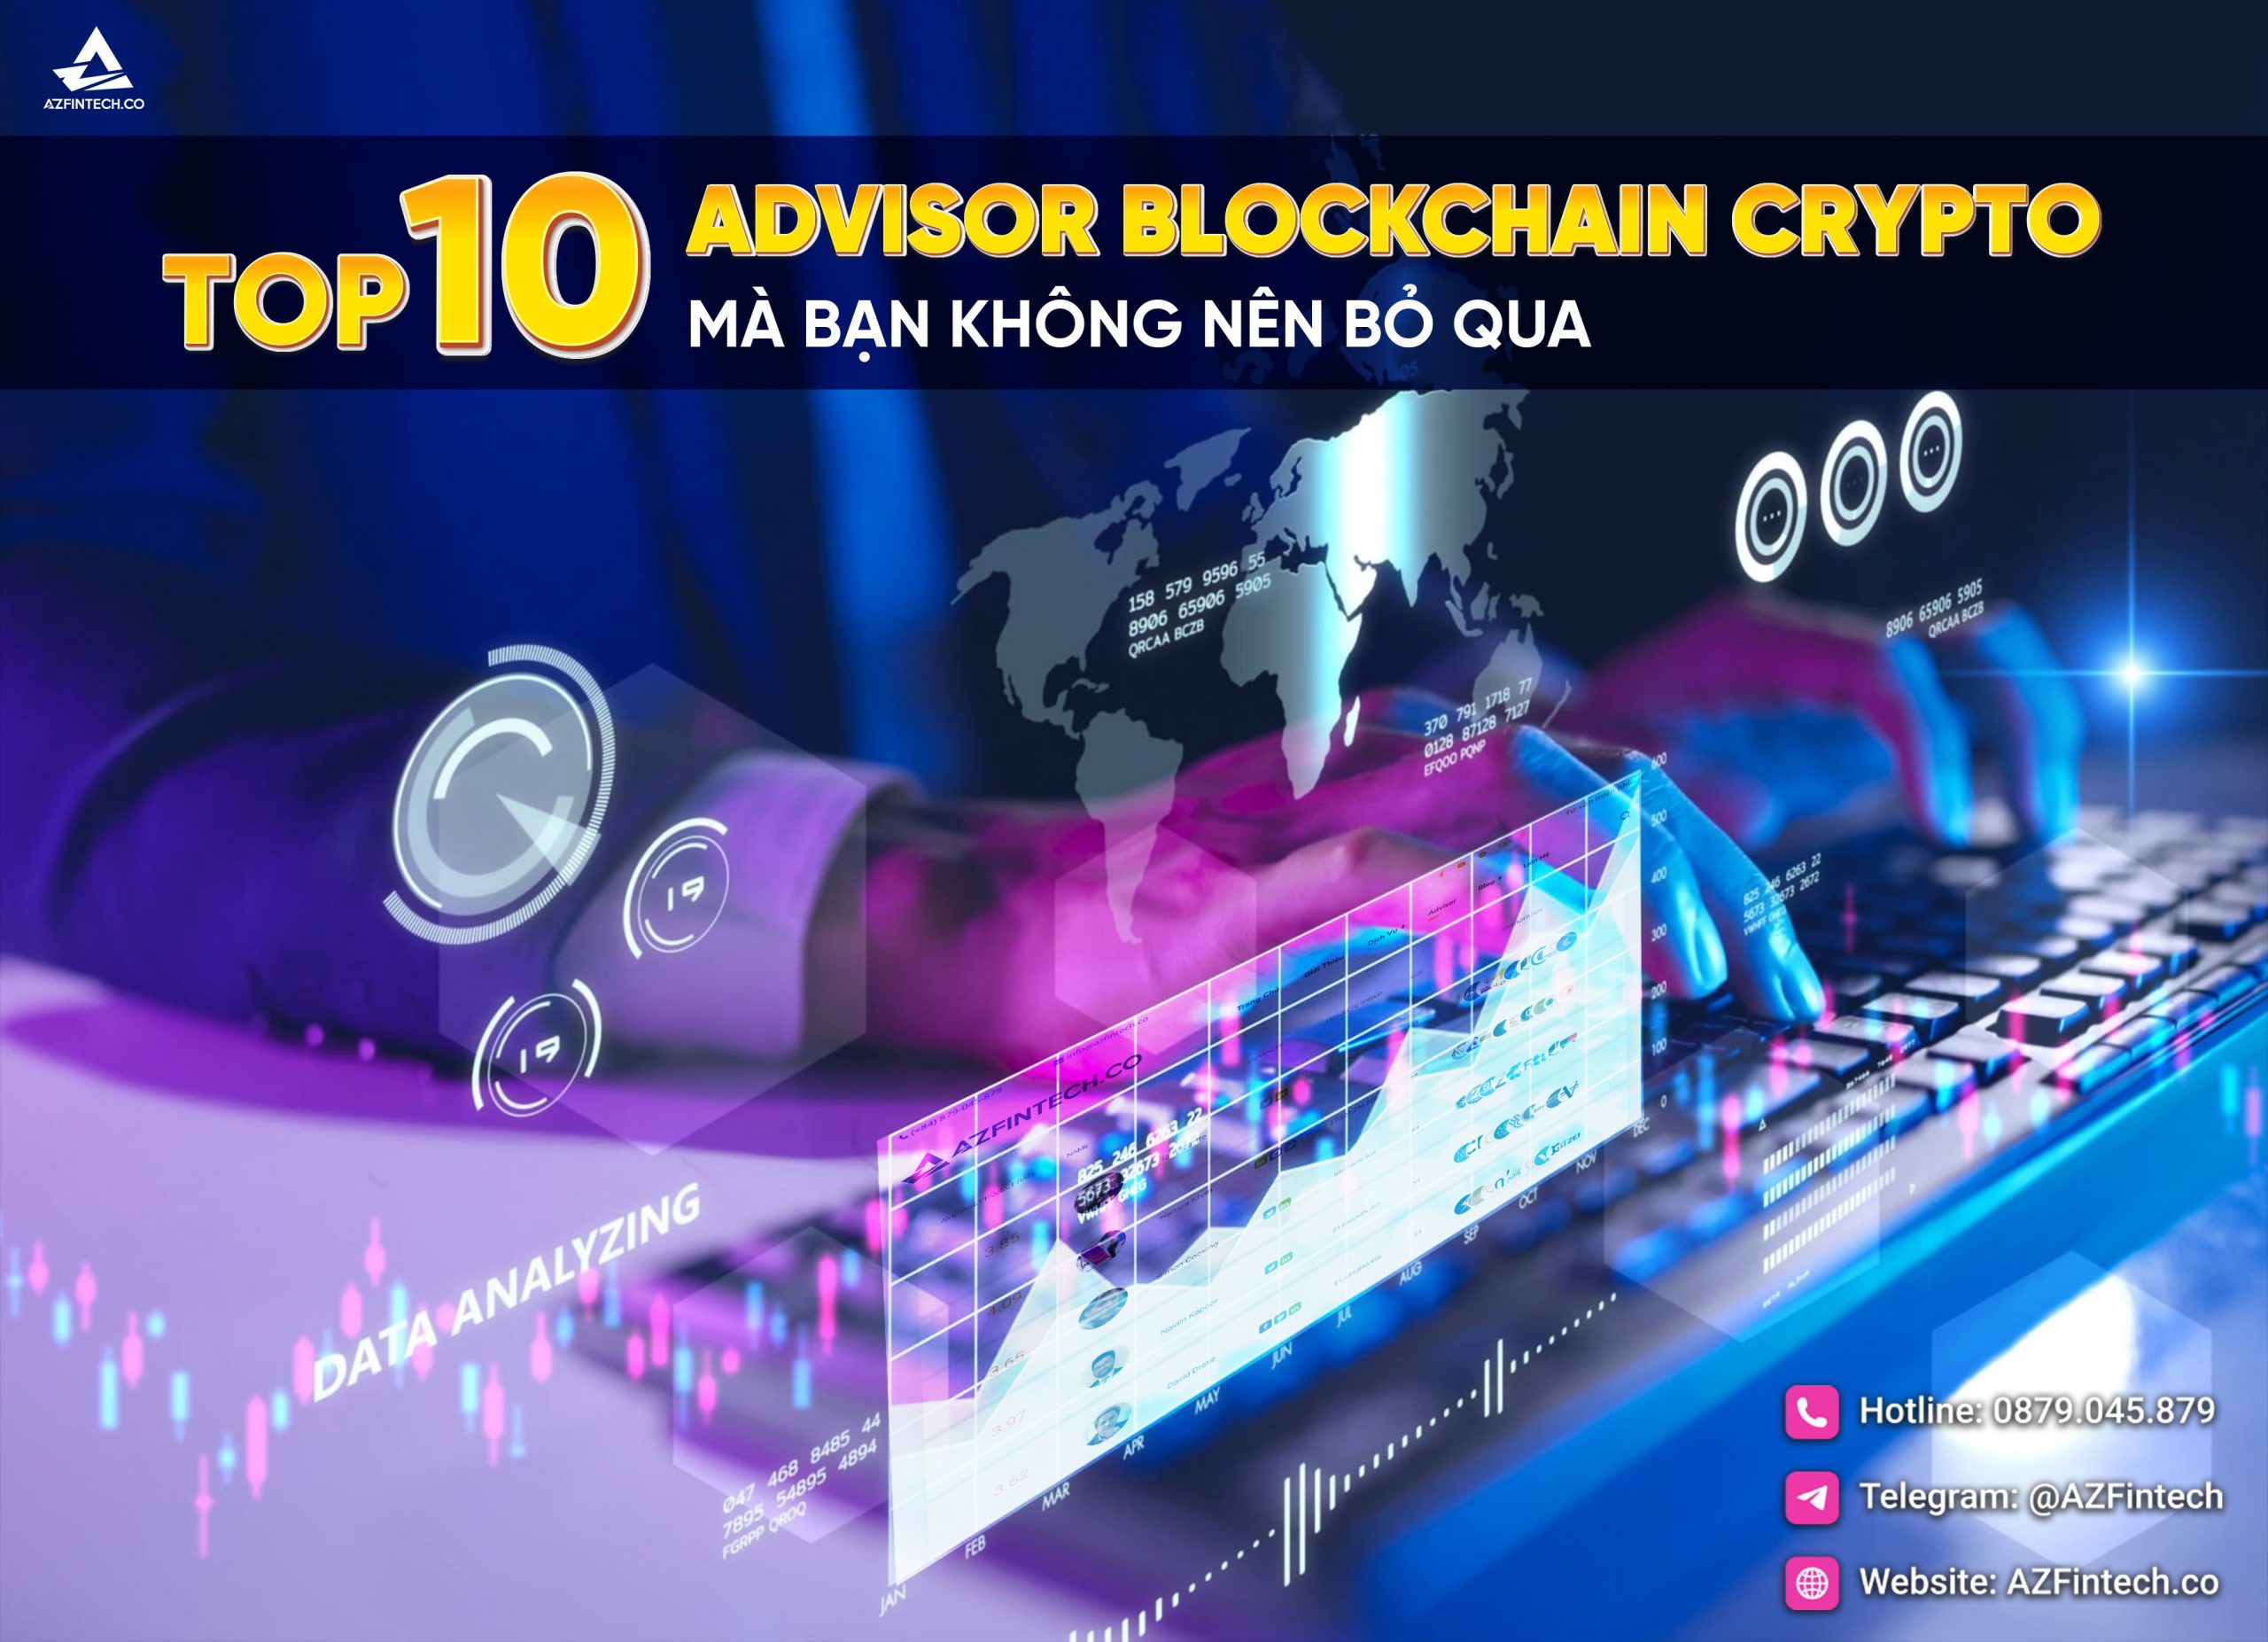 Top 10 Advisor Blockchain Crypto mà bạn không nên bỏ qua